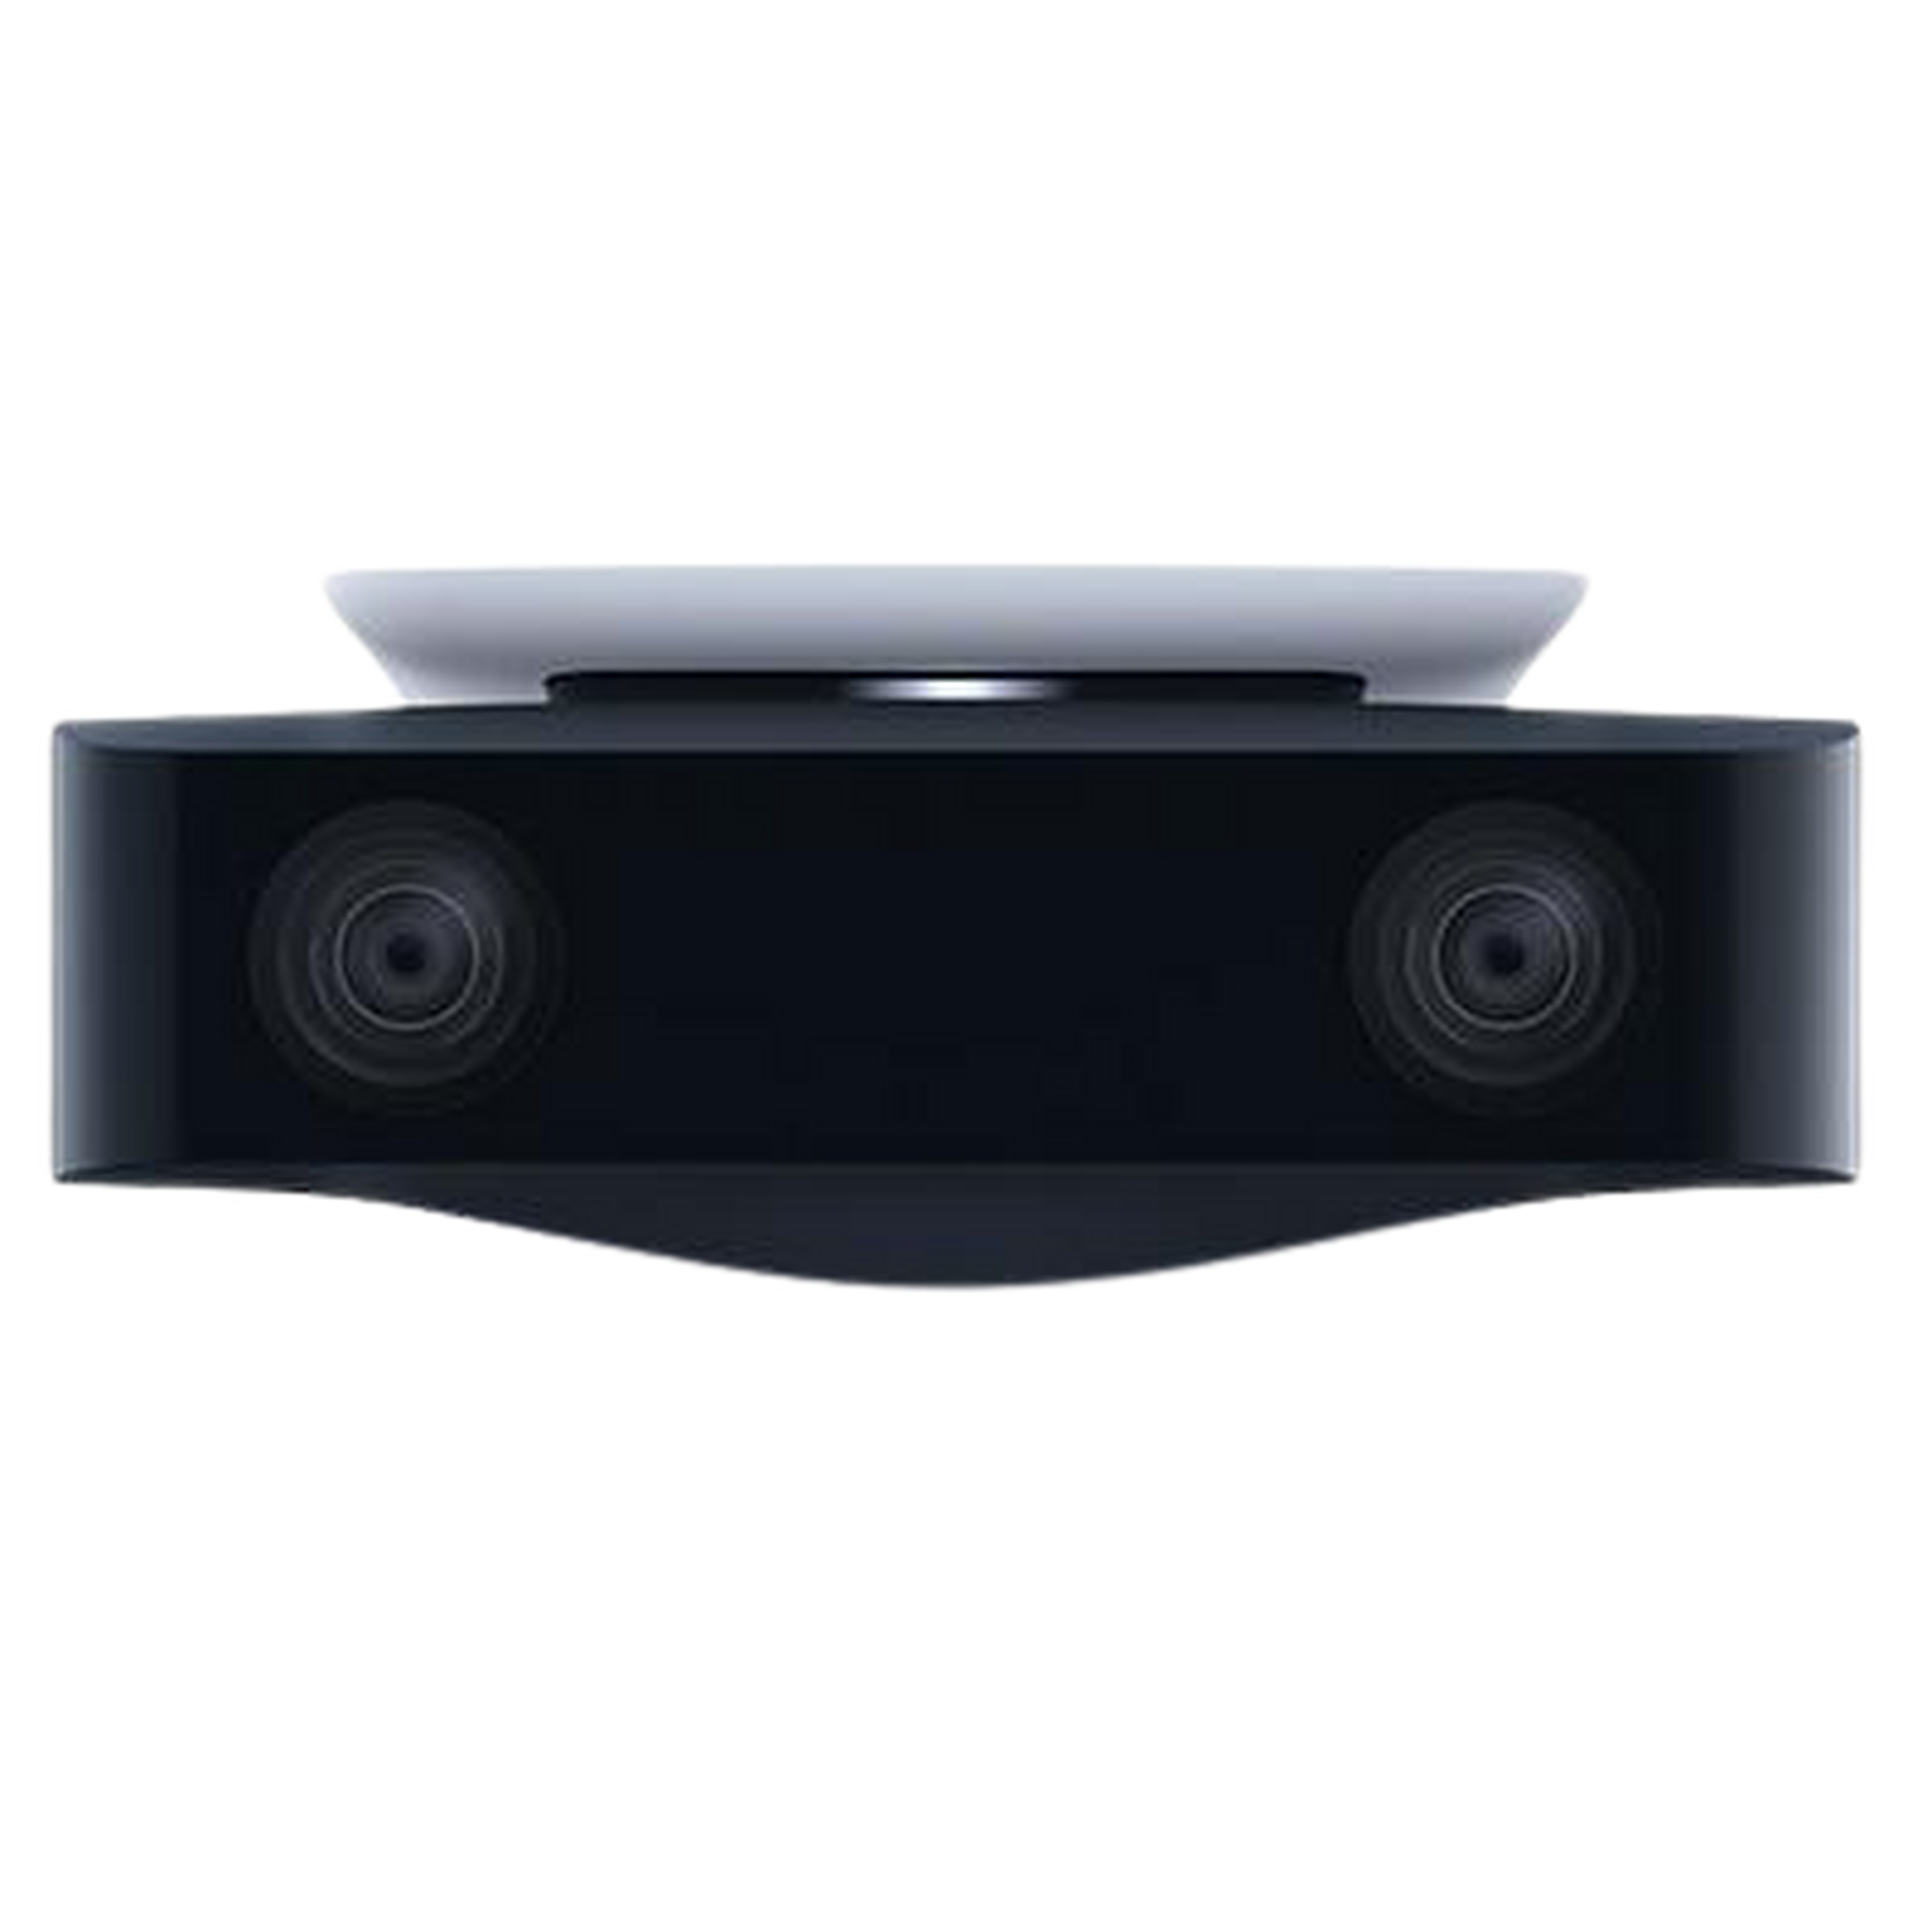 جهاز سوني بلايستيشن 5 إصدار ديجيتال + قسيمة للعبة هورايزن فوربيدن ويست + كاميرا كاملة الوضوح + يد تحكم لاسلكية دول سينس